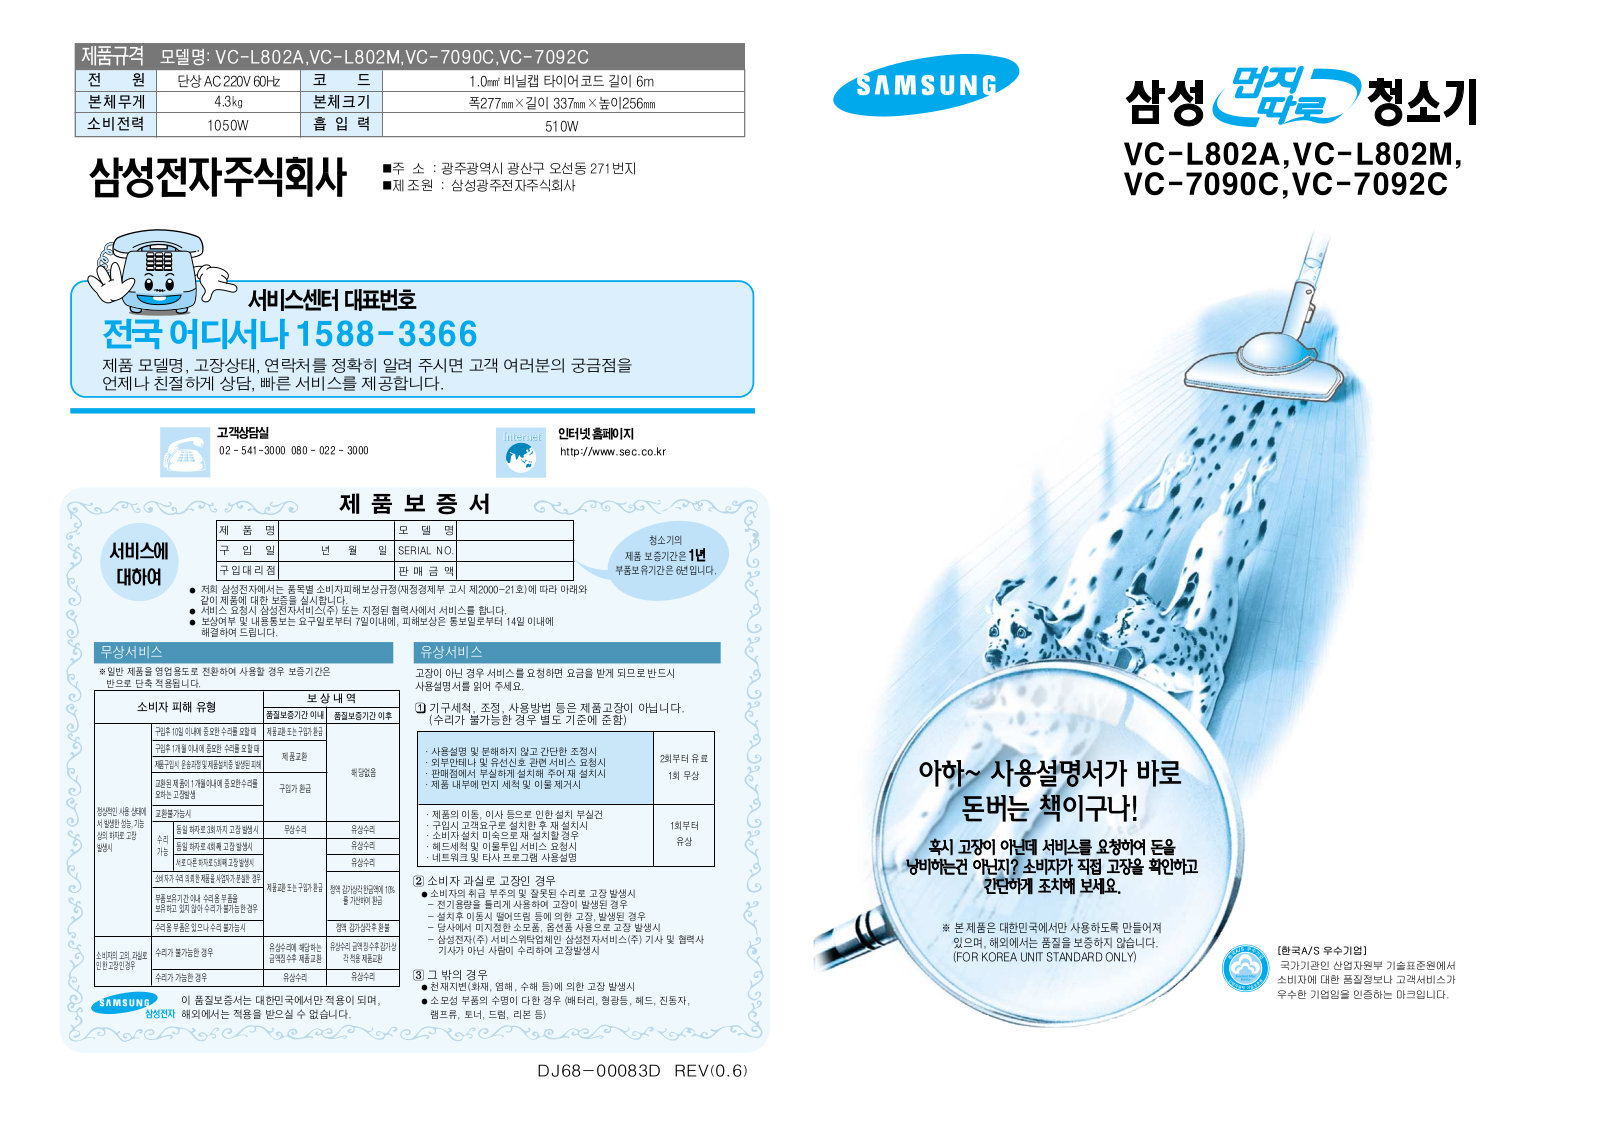 Samsung VC-L802A, VC-7090C, VC-7092C INTRODUCTION